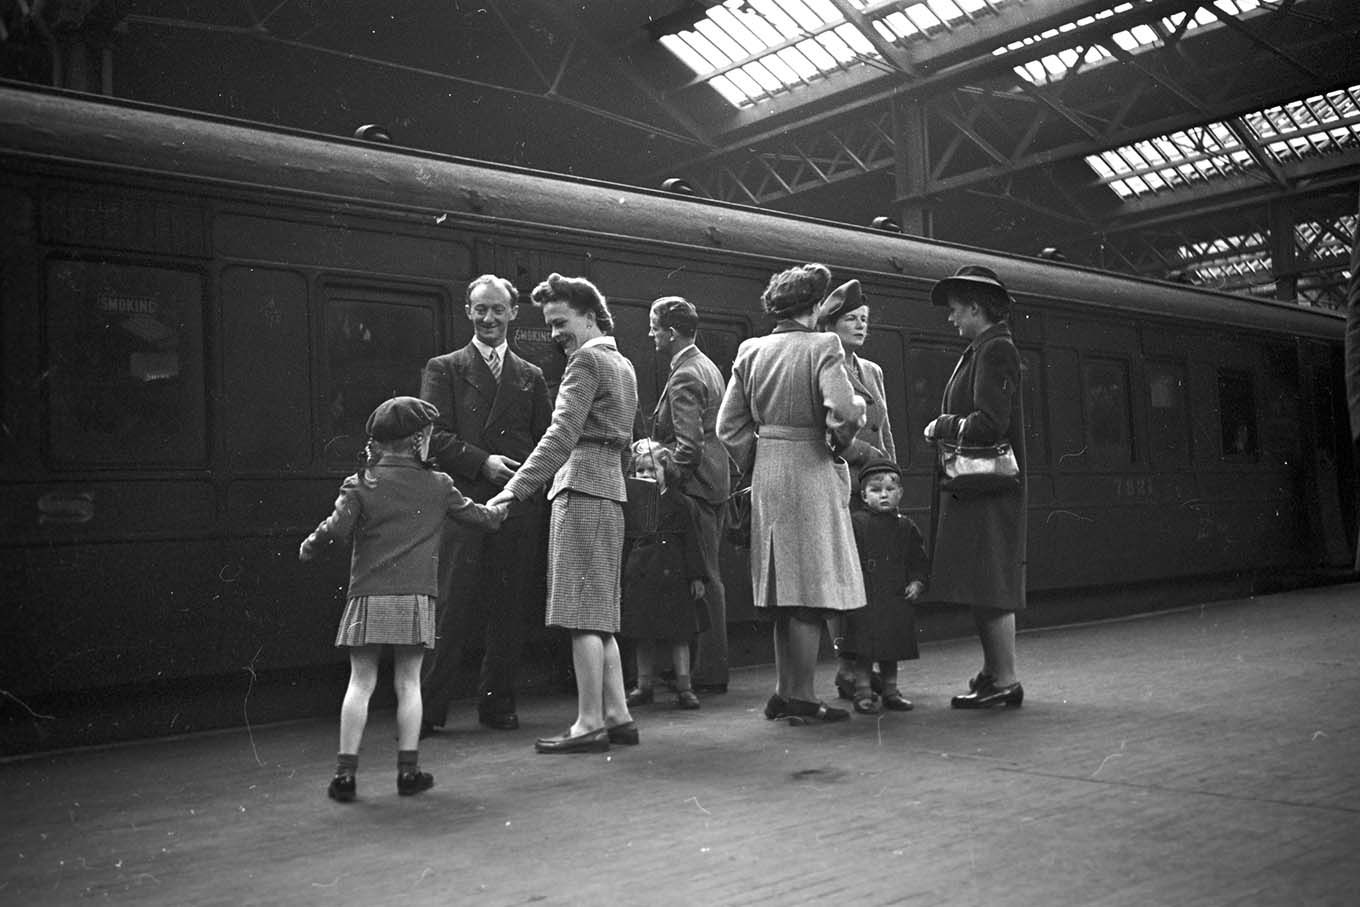 En gruppe mennesker ved siden av et tog, på en innendørs jernbanestasjon. Foto.